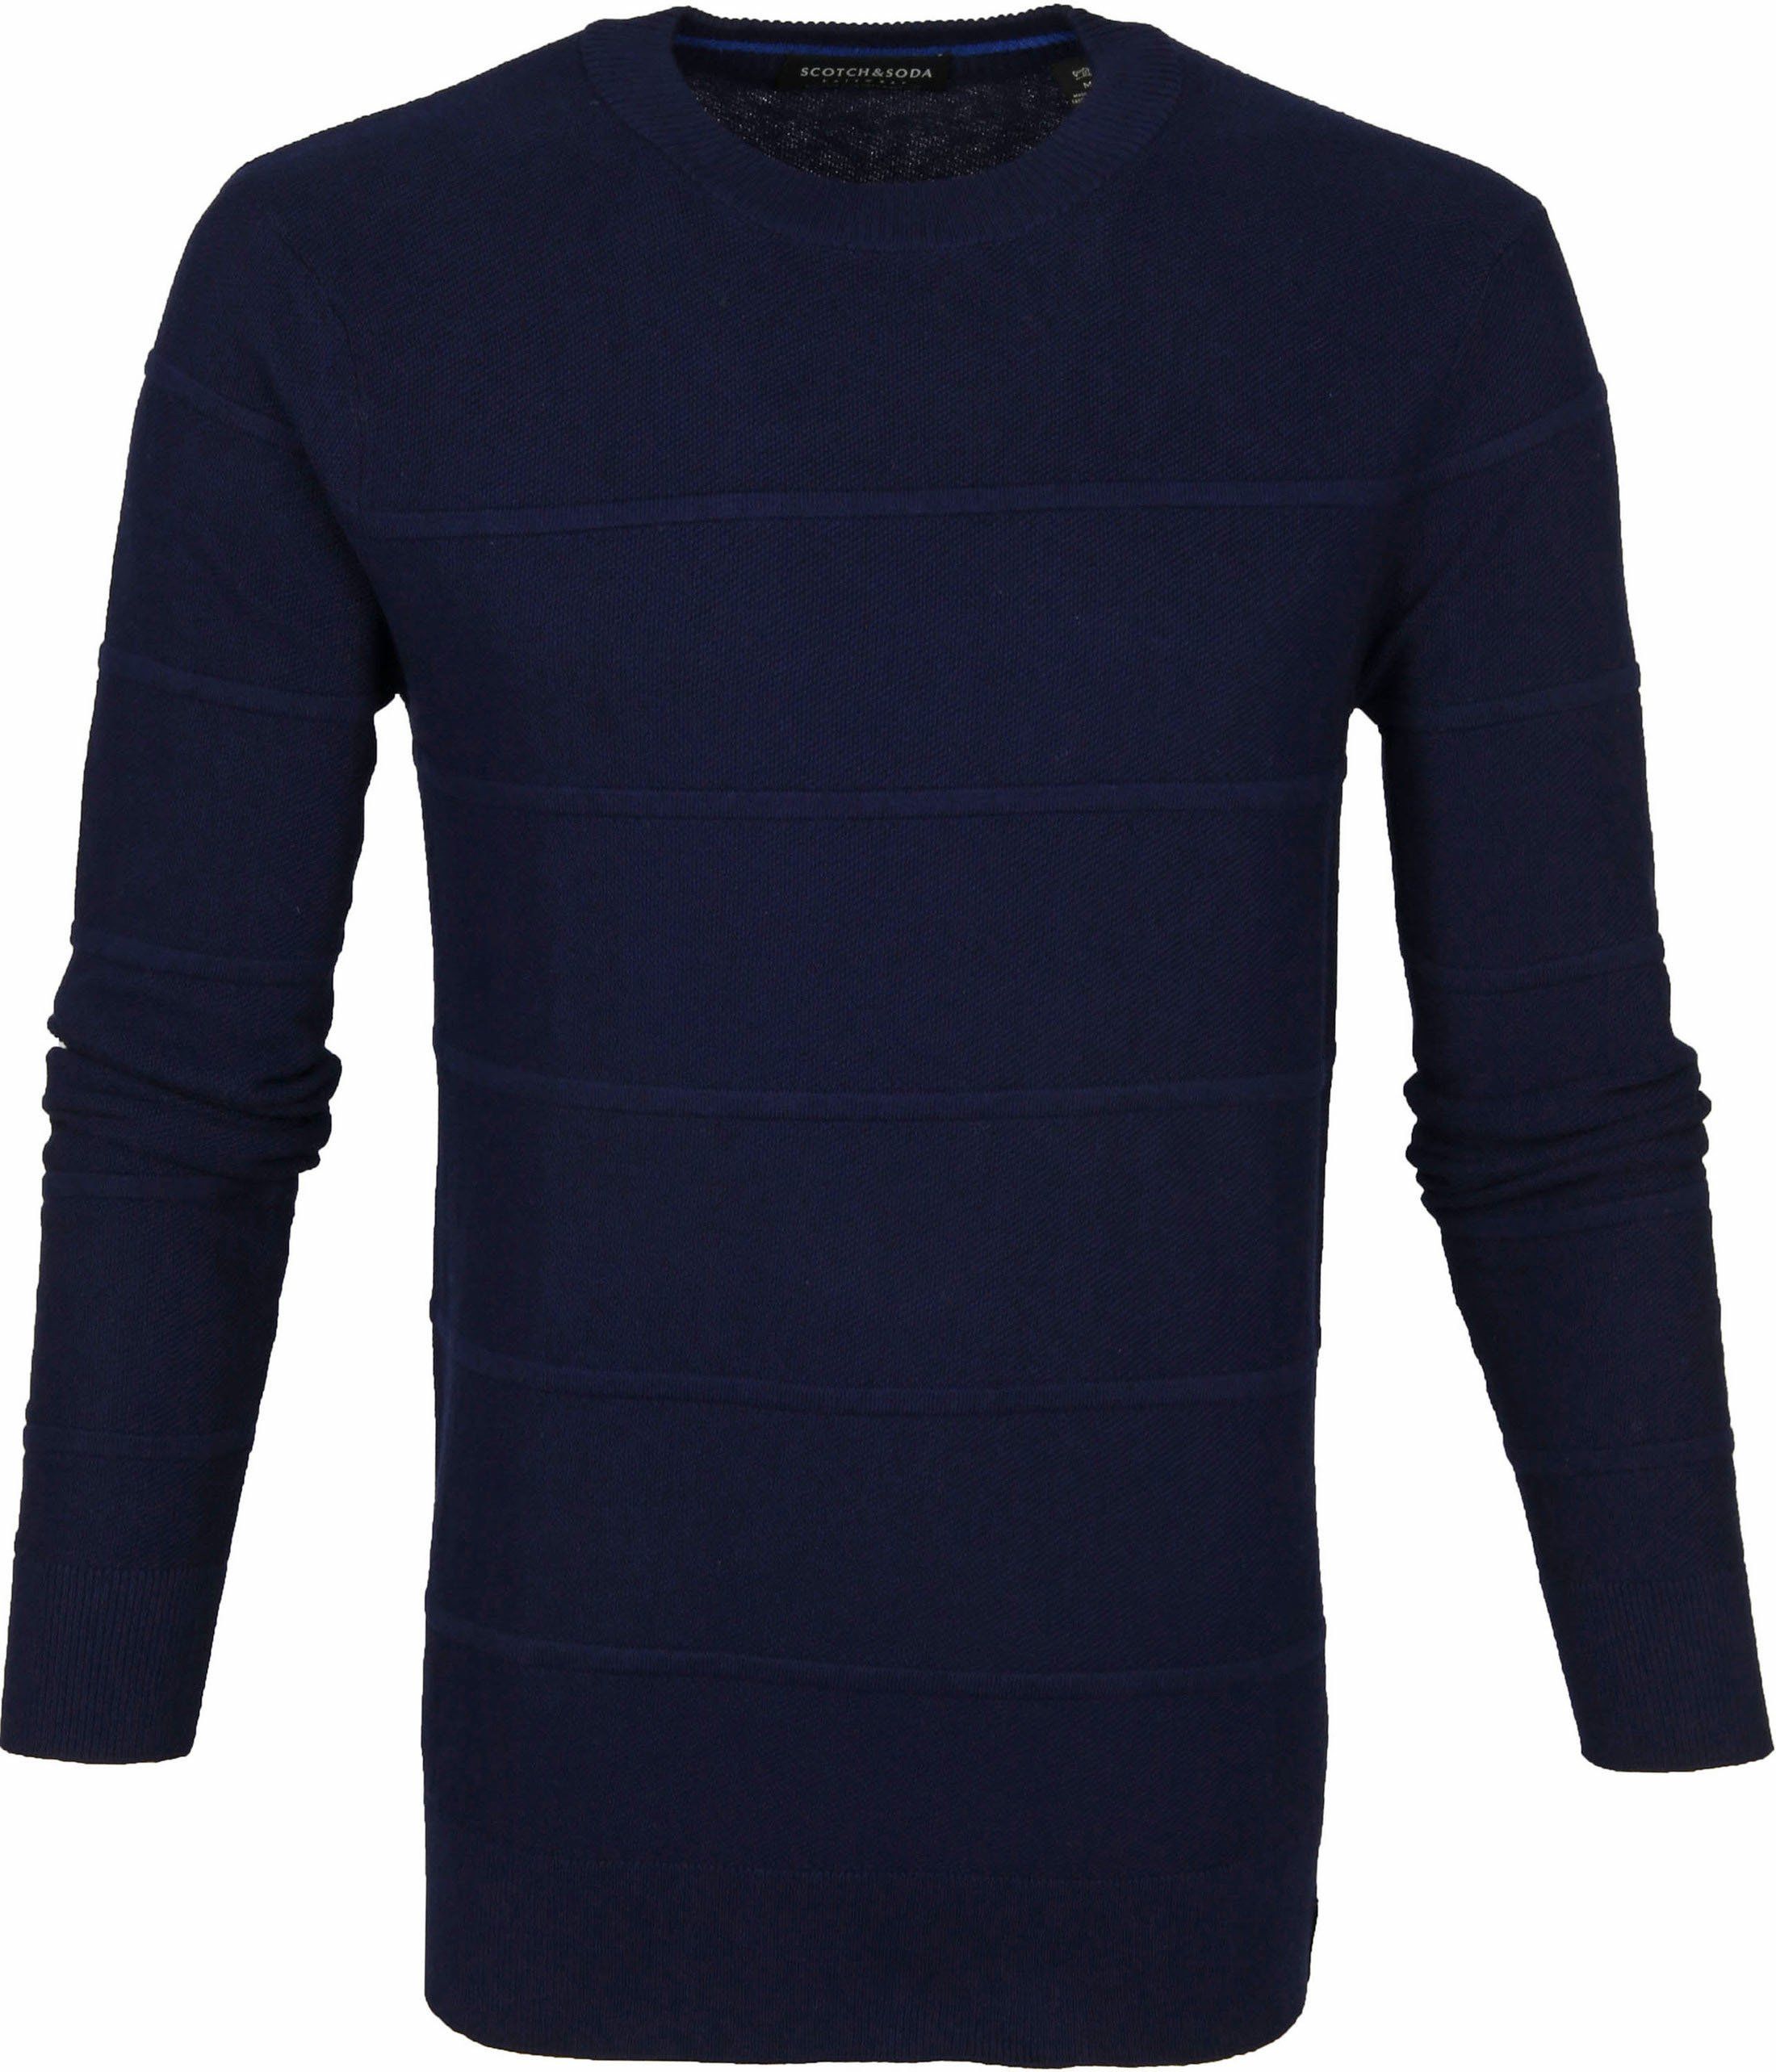 Scotch and Soda Sweater Navy Stripes Dark Blue Blue size XL